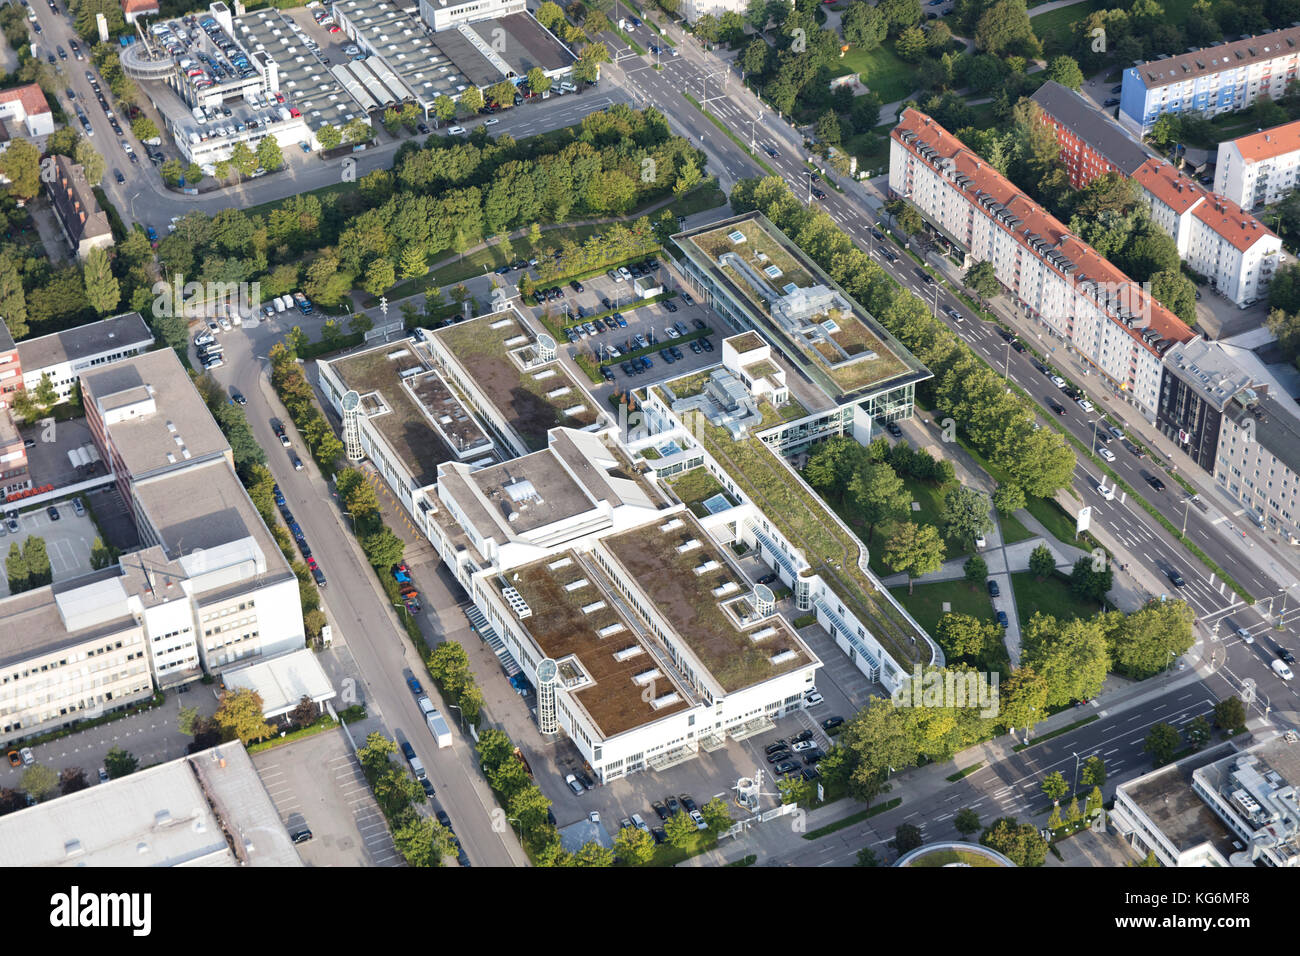 aerial view of BMW Munich branch, BMW Niederlassung München, Germany Stock Photo